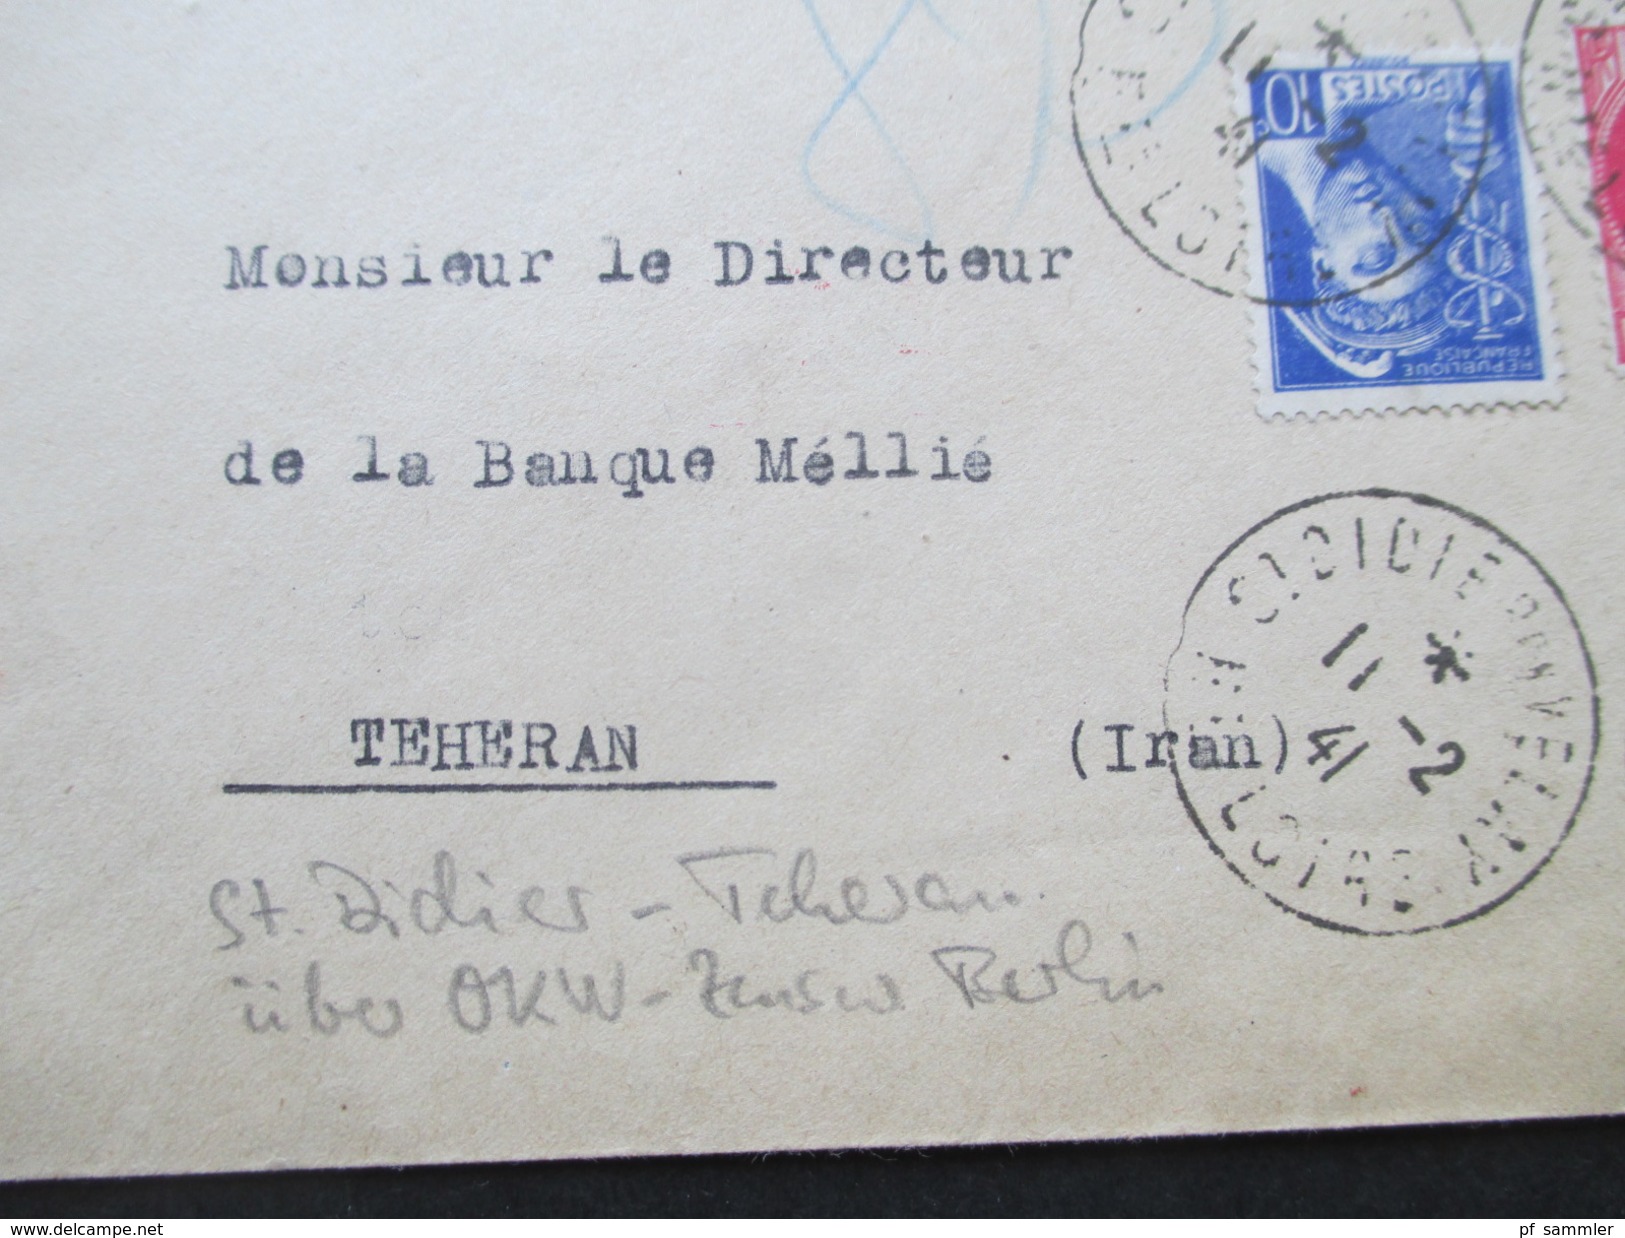 Frankreich 1941 St. Didier En Valey - Teheran Iran. Über OKW Zensur Berlin. Seltene Destination!! Zensurbeleg 3. Reich. - Lettres & Documents